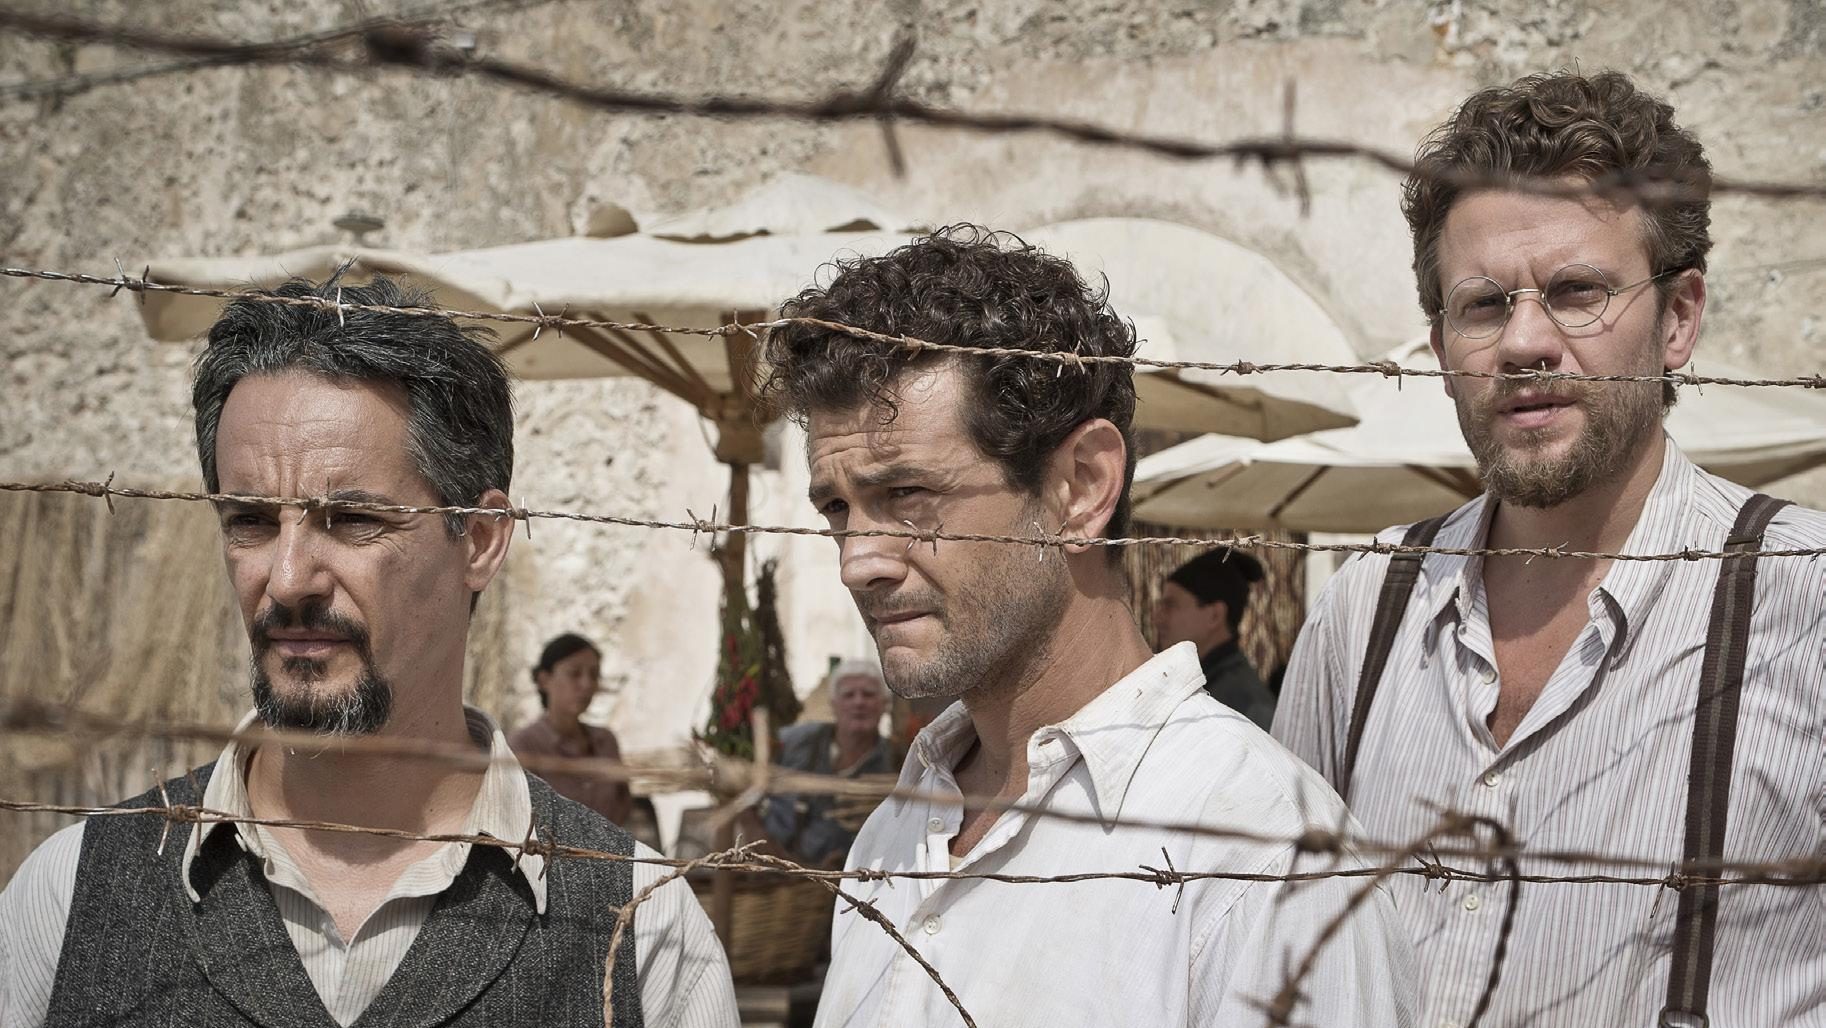 Altiero Spinelli, Eugenio Colorni ed Ernesto Rossi, in un'immagine del film "Un mondo nuovo".